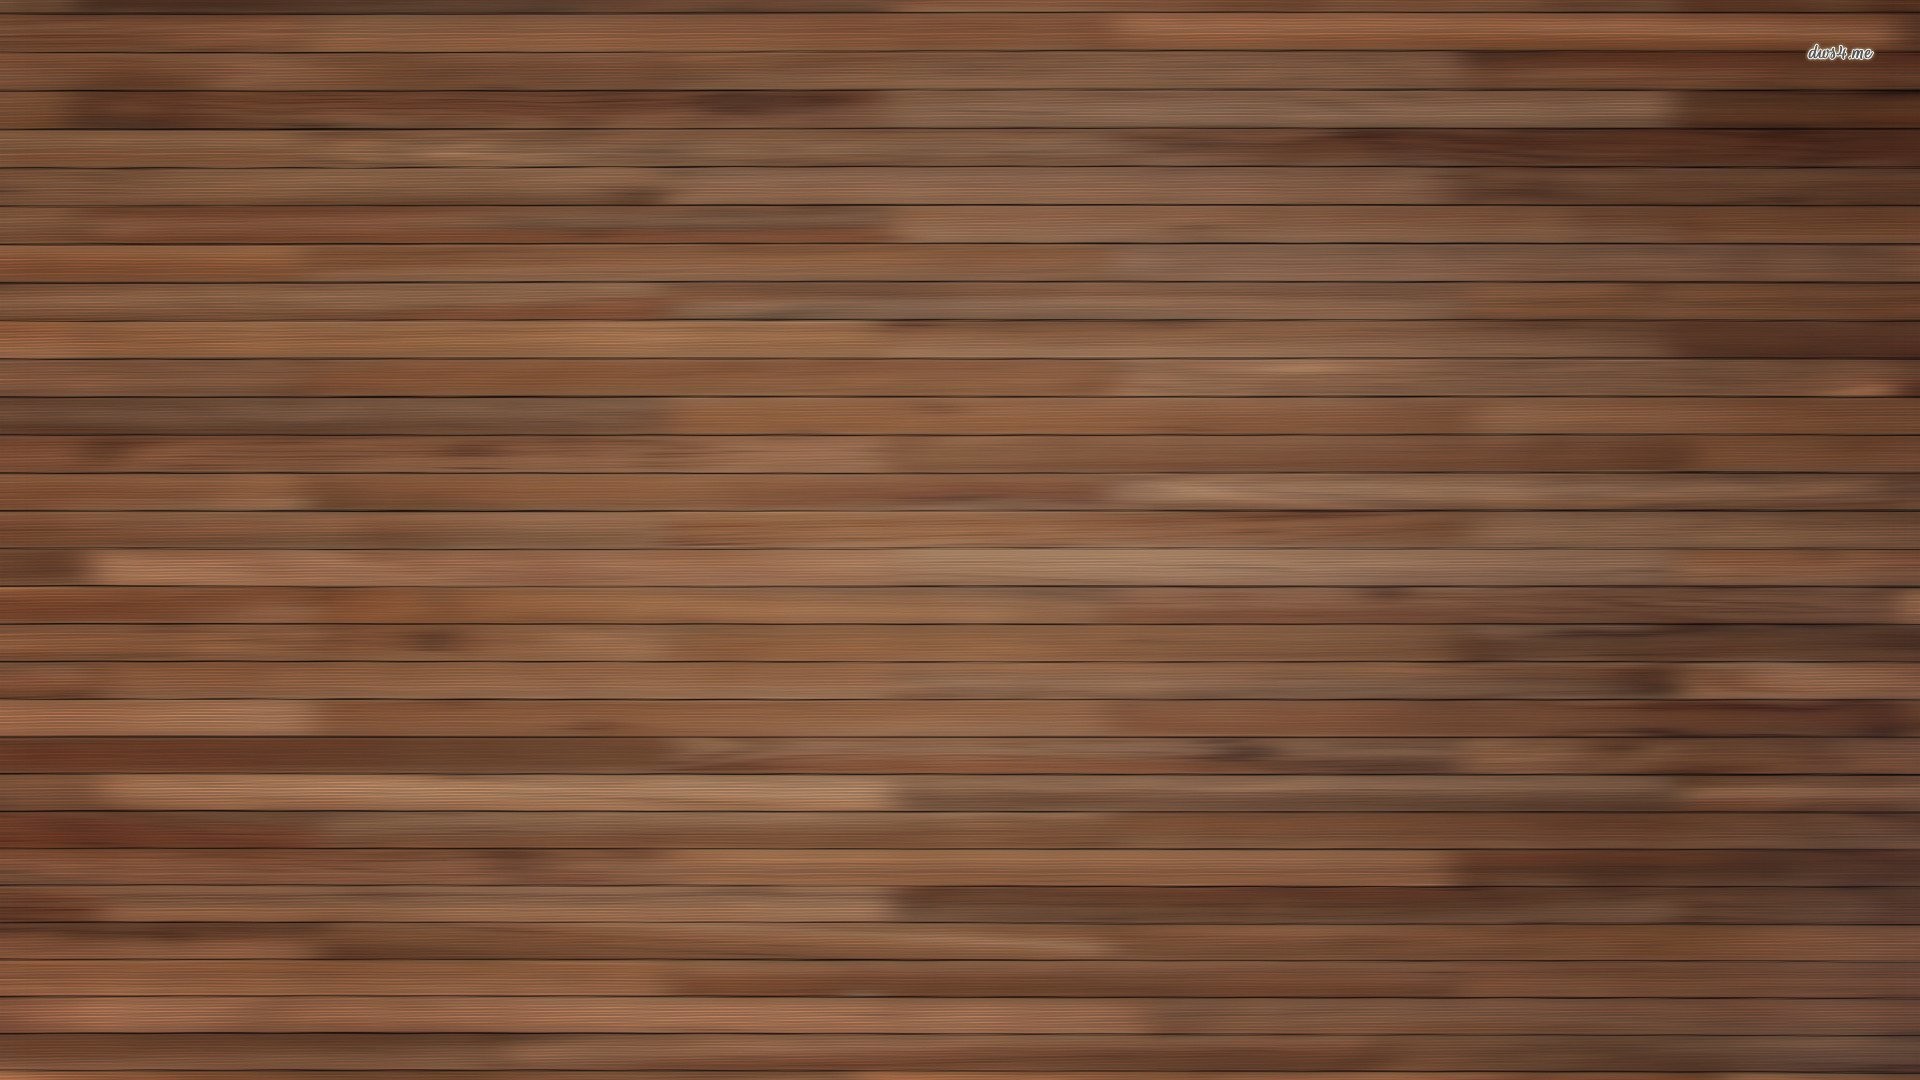 1920x1080 Wood-Grain-HD-wallpaper-wpt72010299